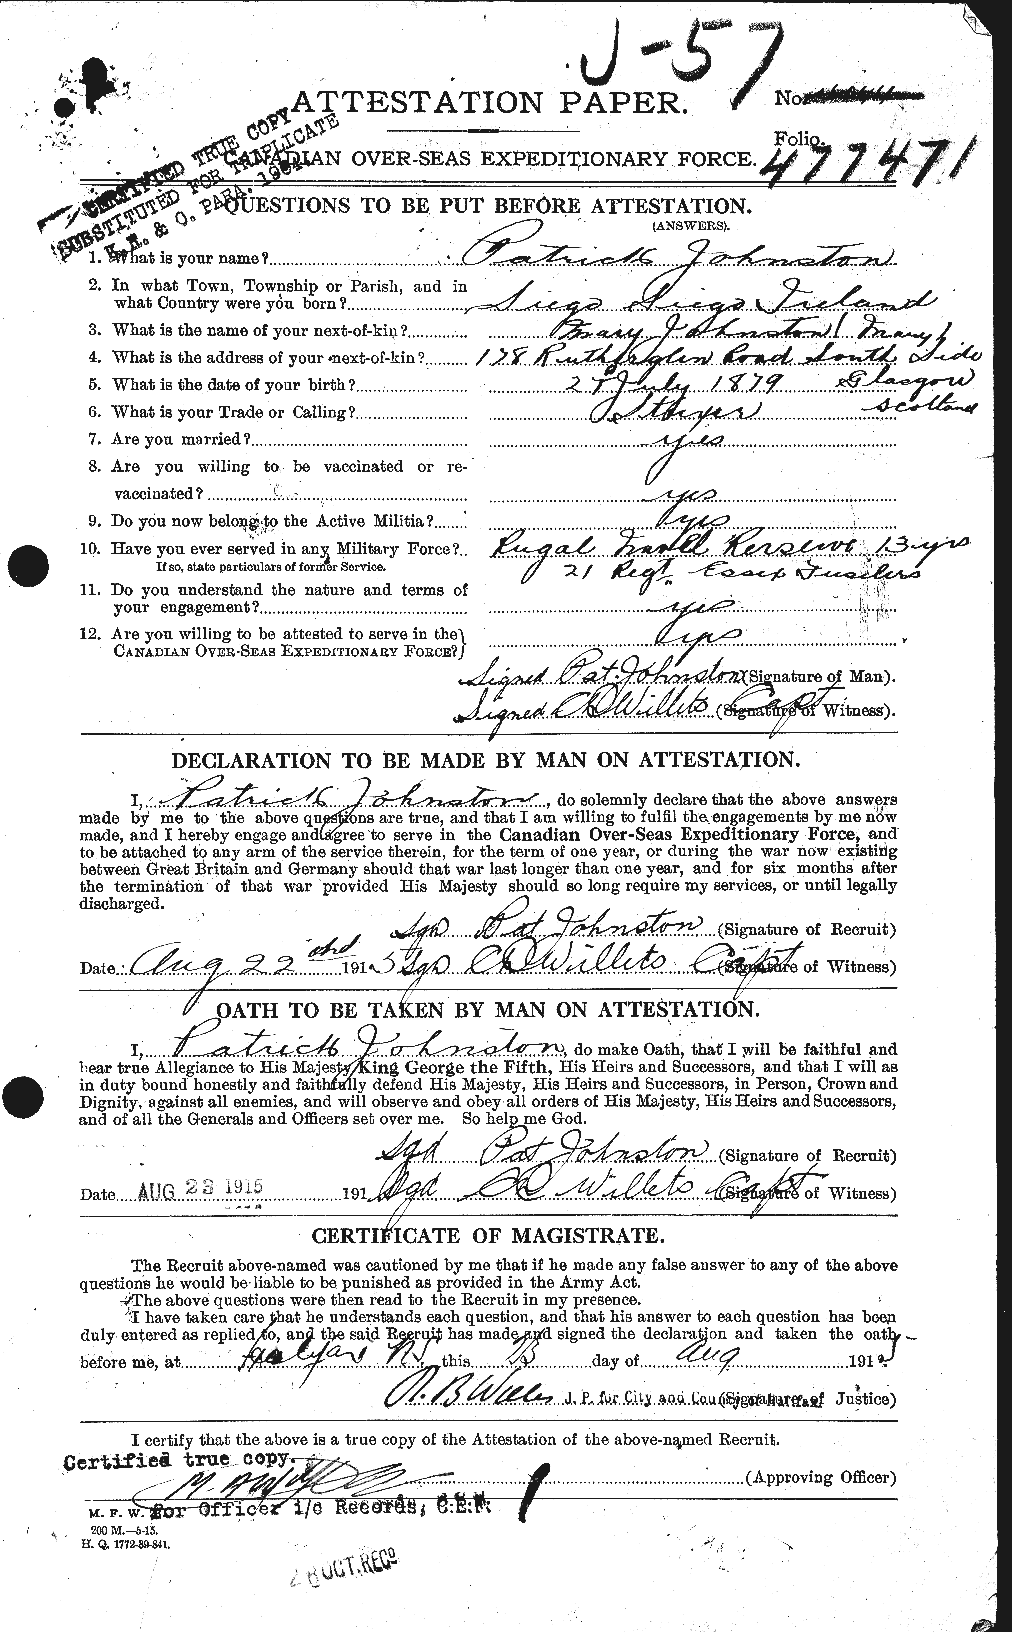 Dossiers du Personnel de la Première Guerre mondiale - CEC 423022a